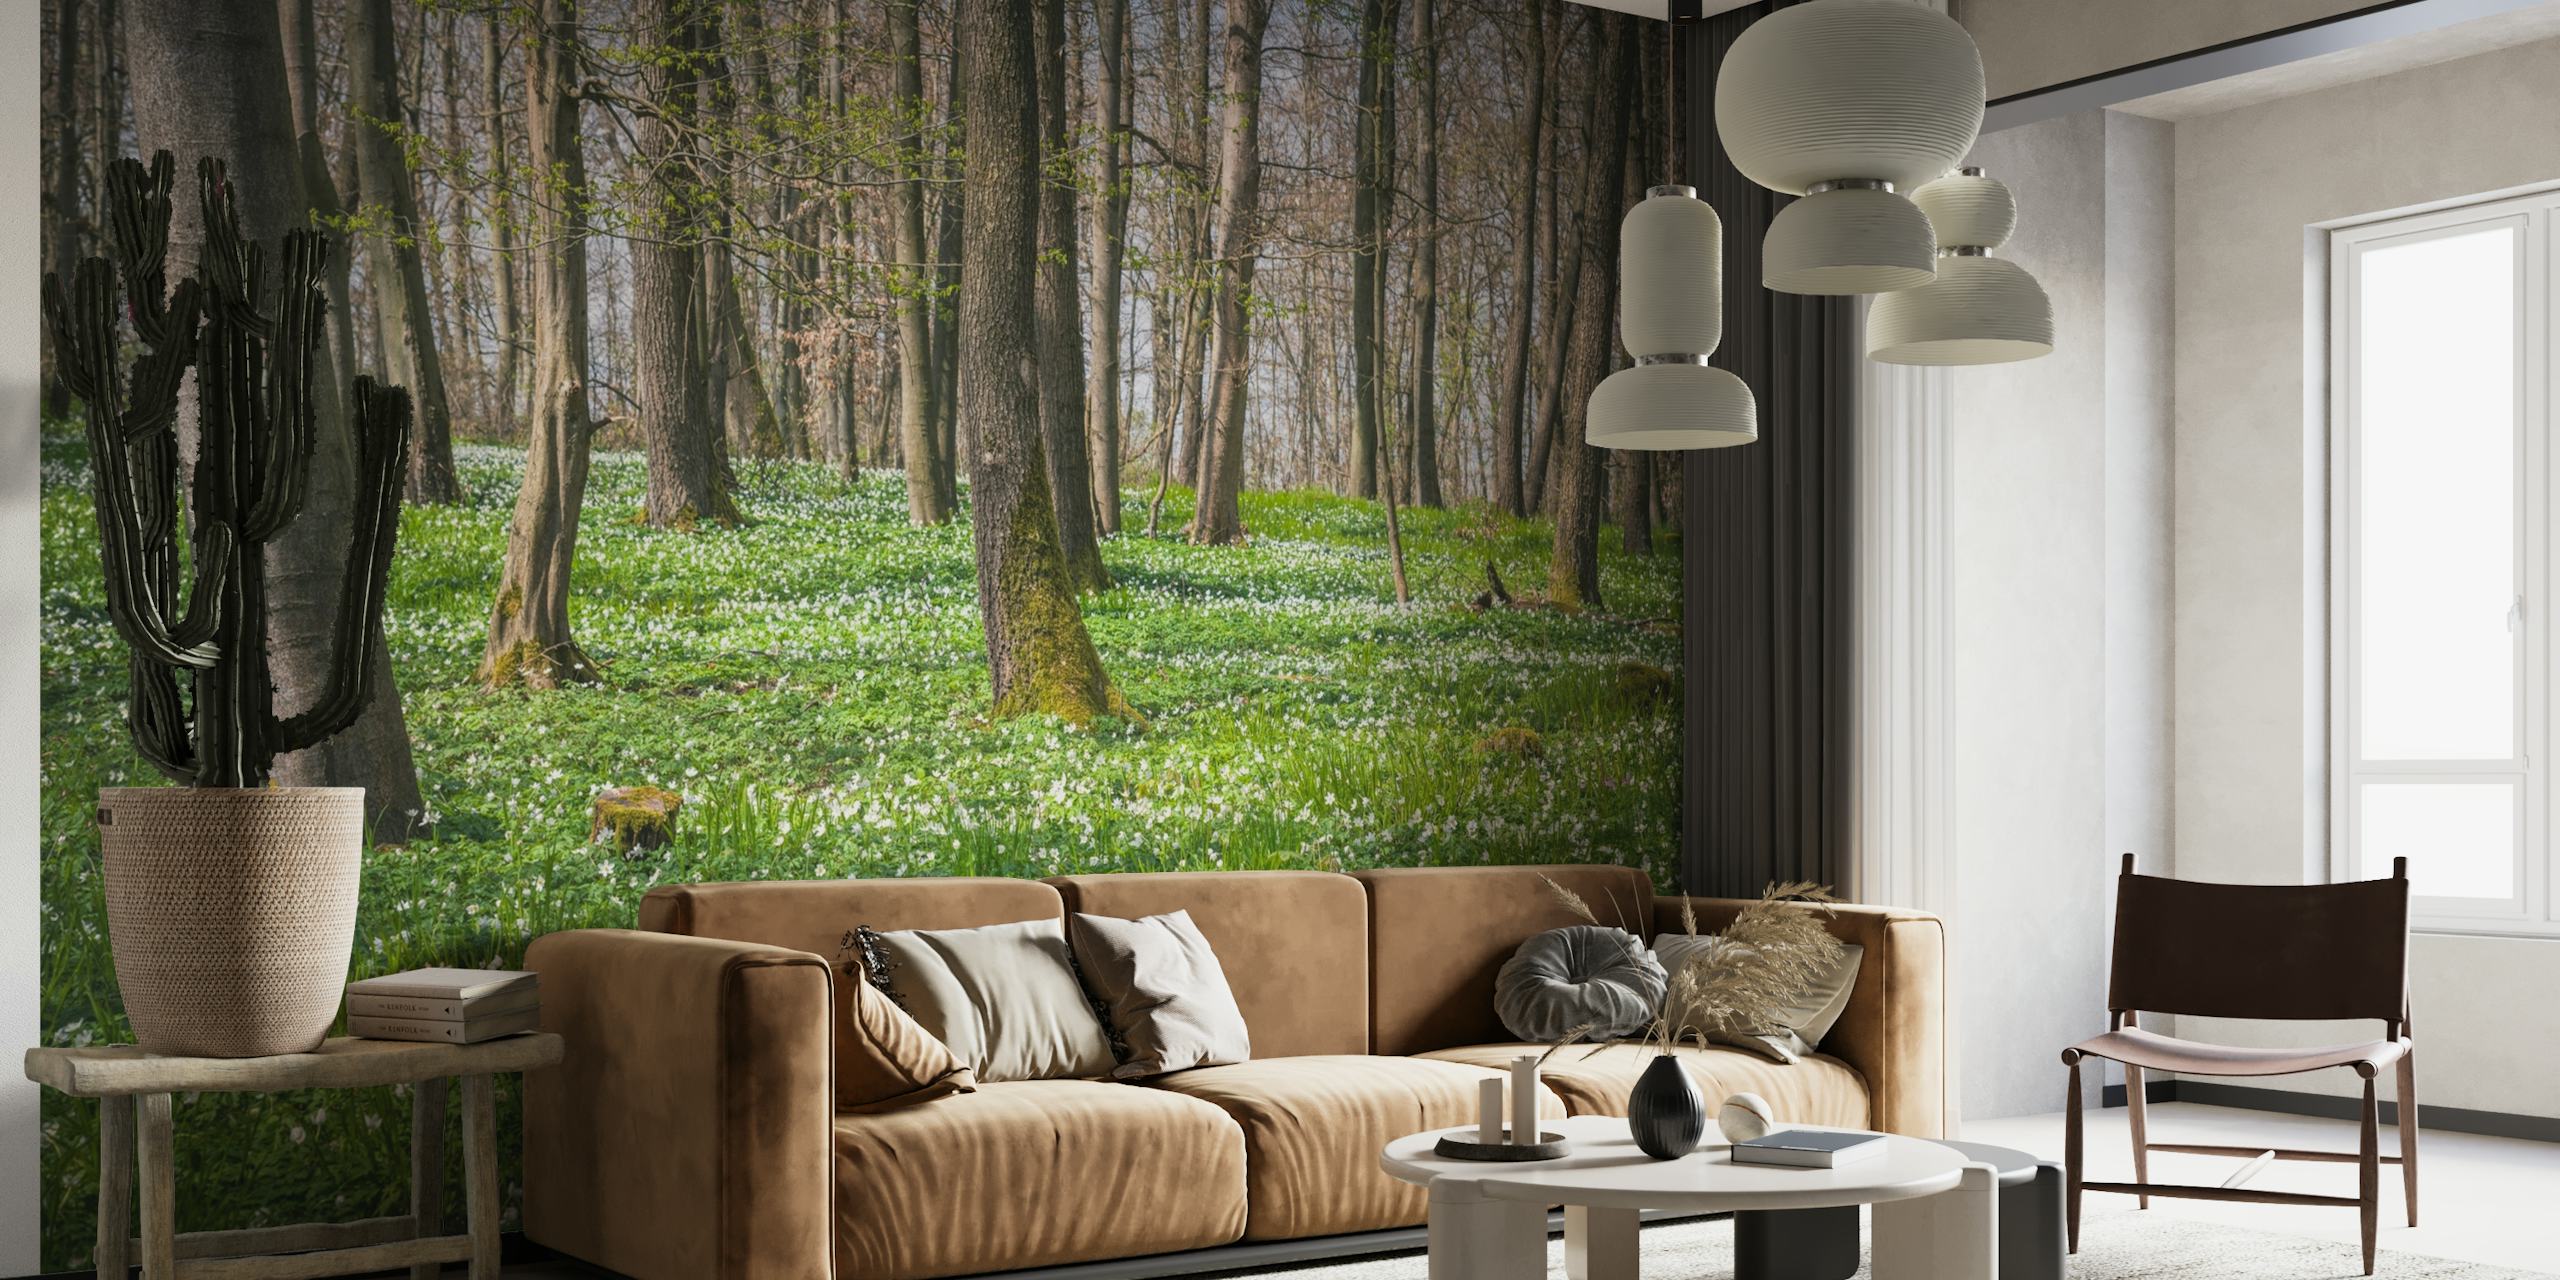 Fotomural de bosque con anémonas de madera cubriendo el suelo, aportando un toque primaveral a tu habitación.